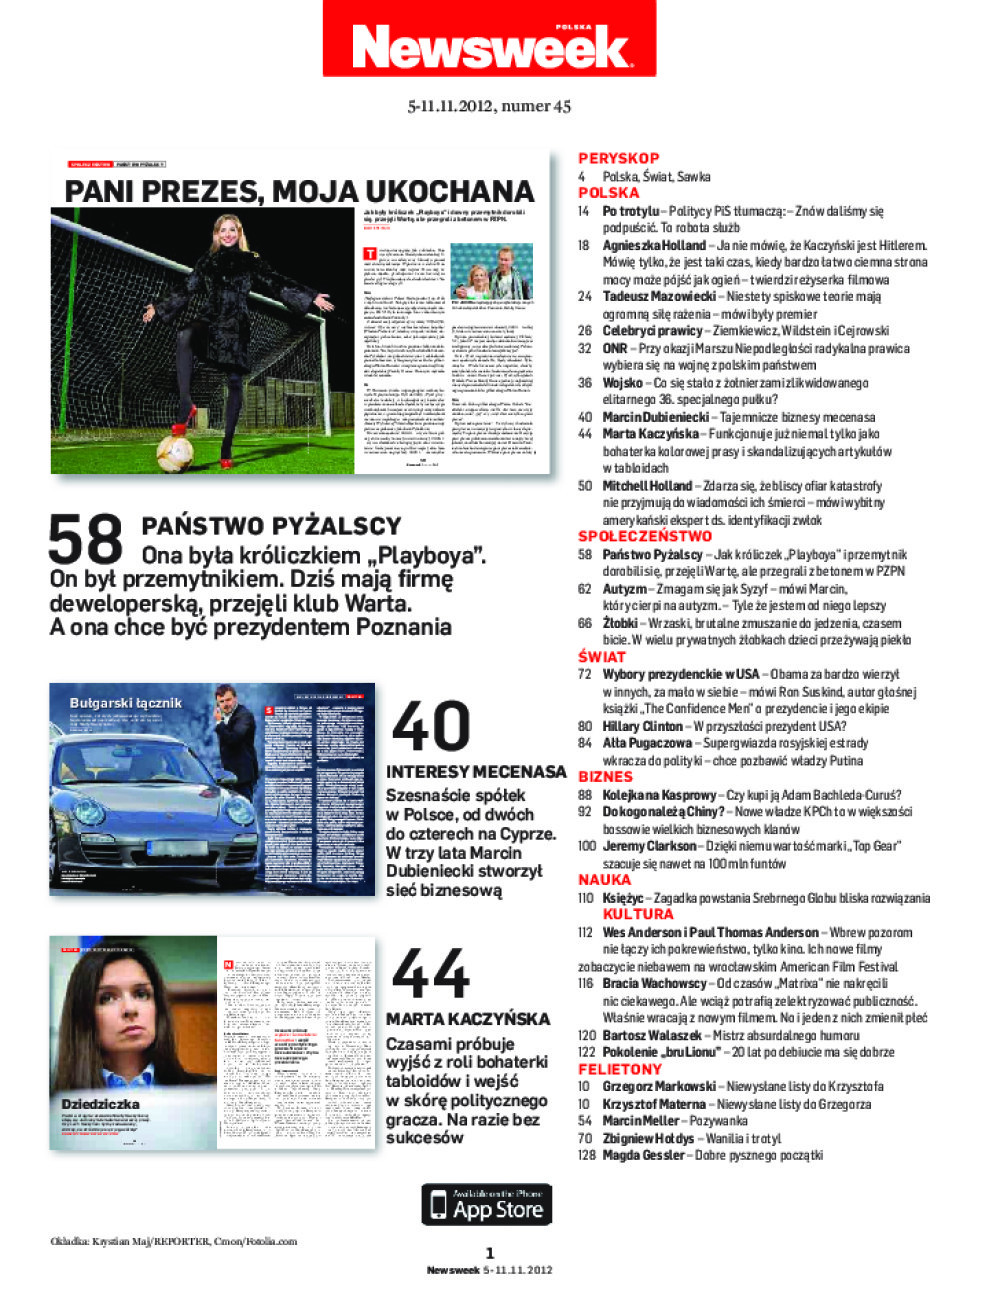 http://images.nexto.pl/upload/wysiwyg/magazines/2012/axel_springer_polska/newsweek/public/newsweek-axel_springer_polska-20121105-toc1.jpg